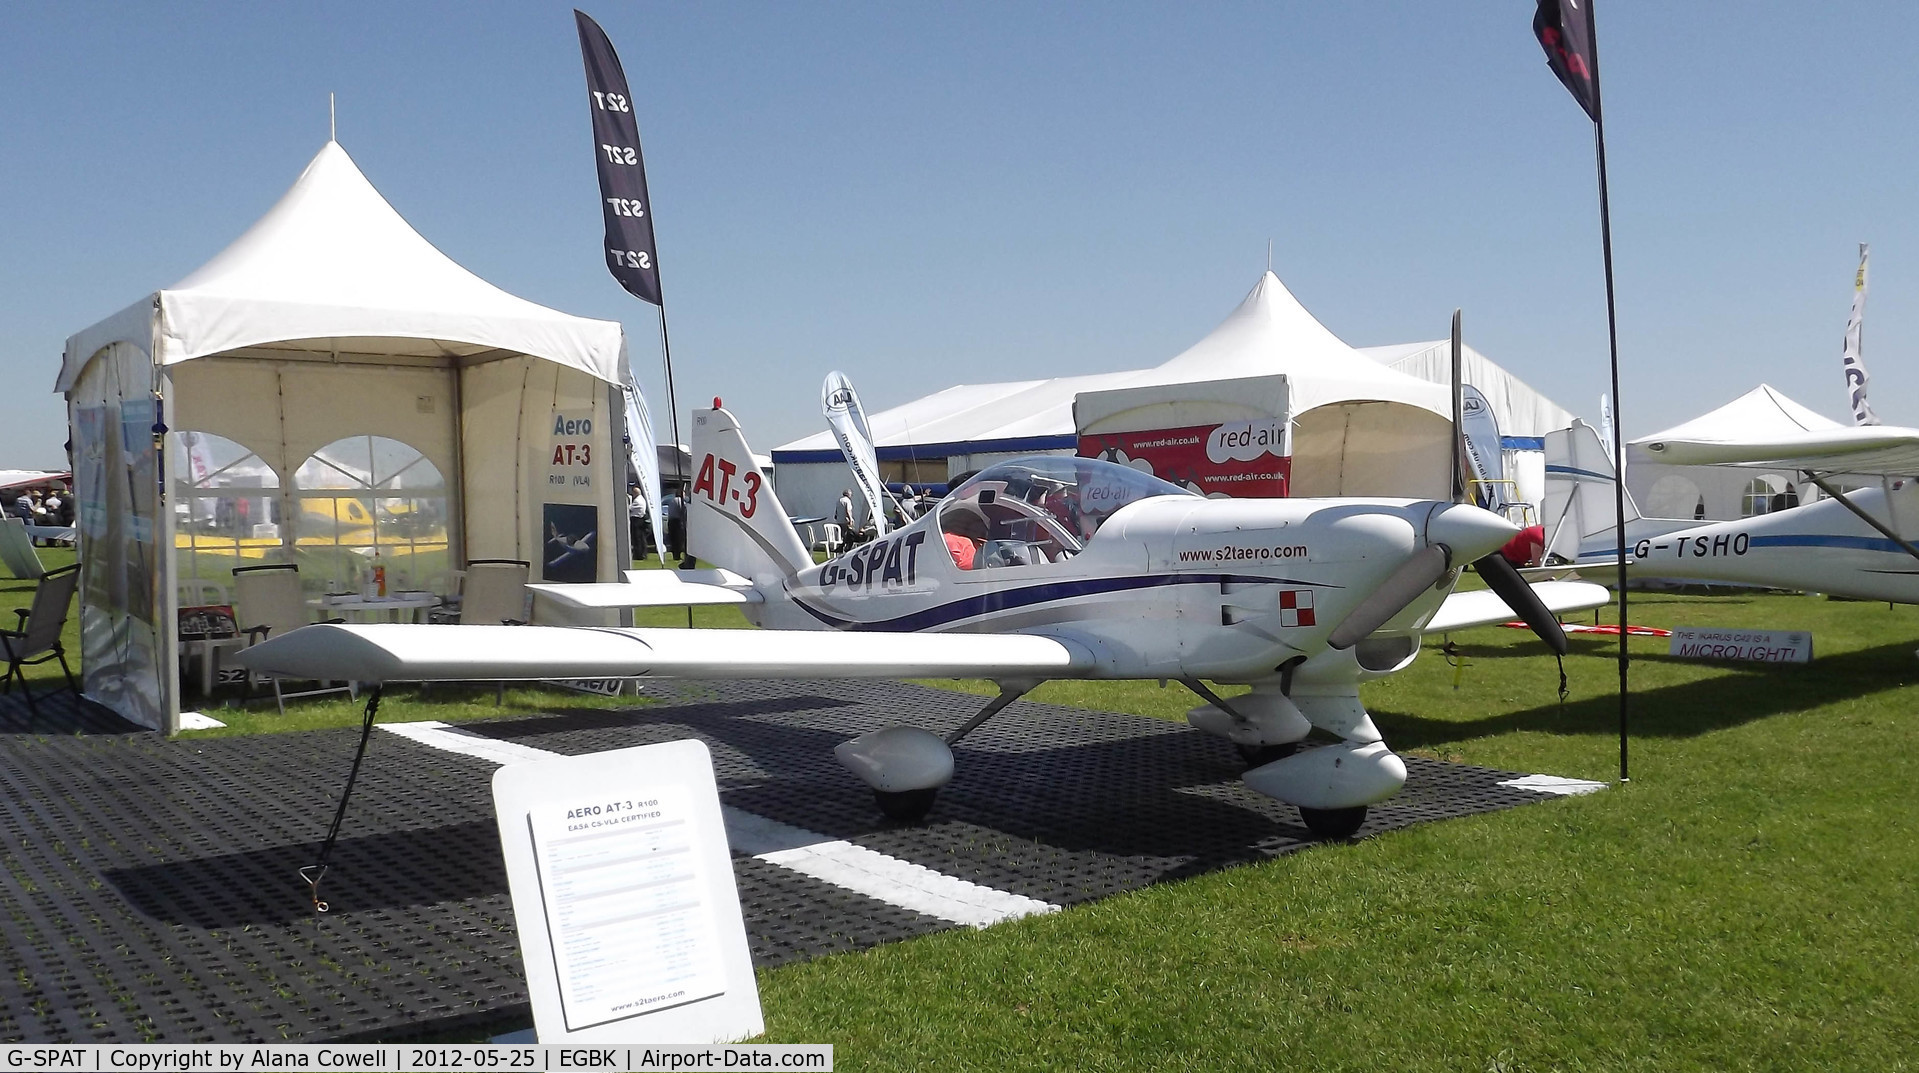 G-SPAT, 2003 Aero AT-3 R100 C/N AT3-008, G-SPAT at AeroExpo, Sywell 2012.